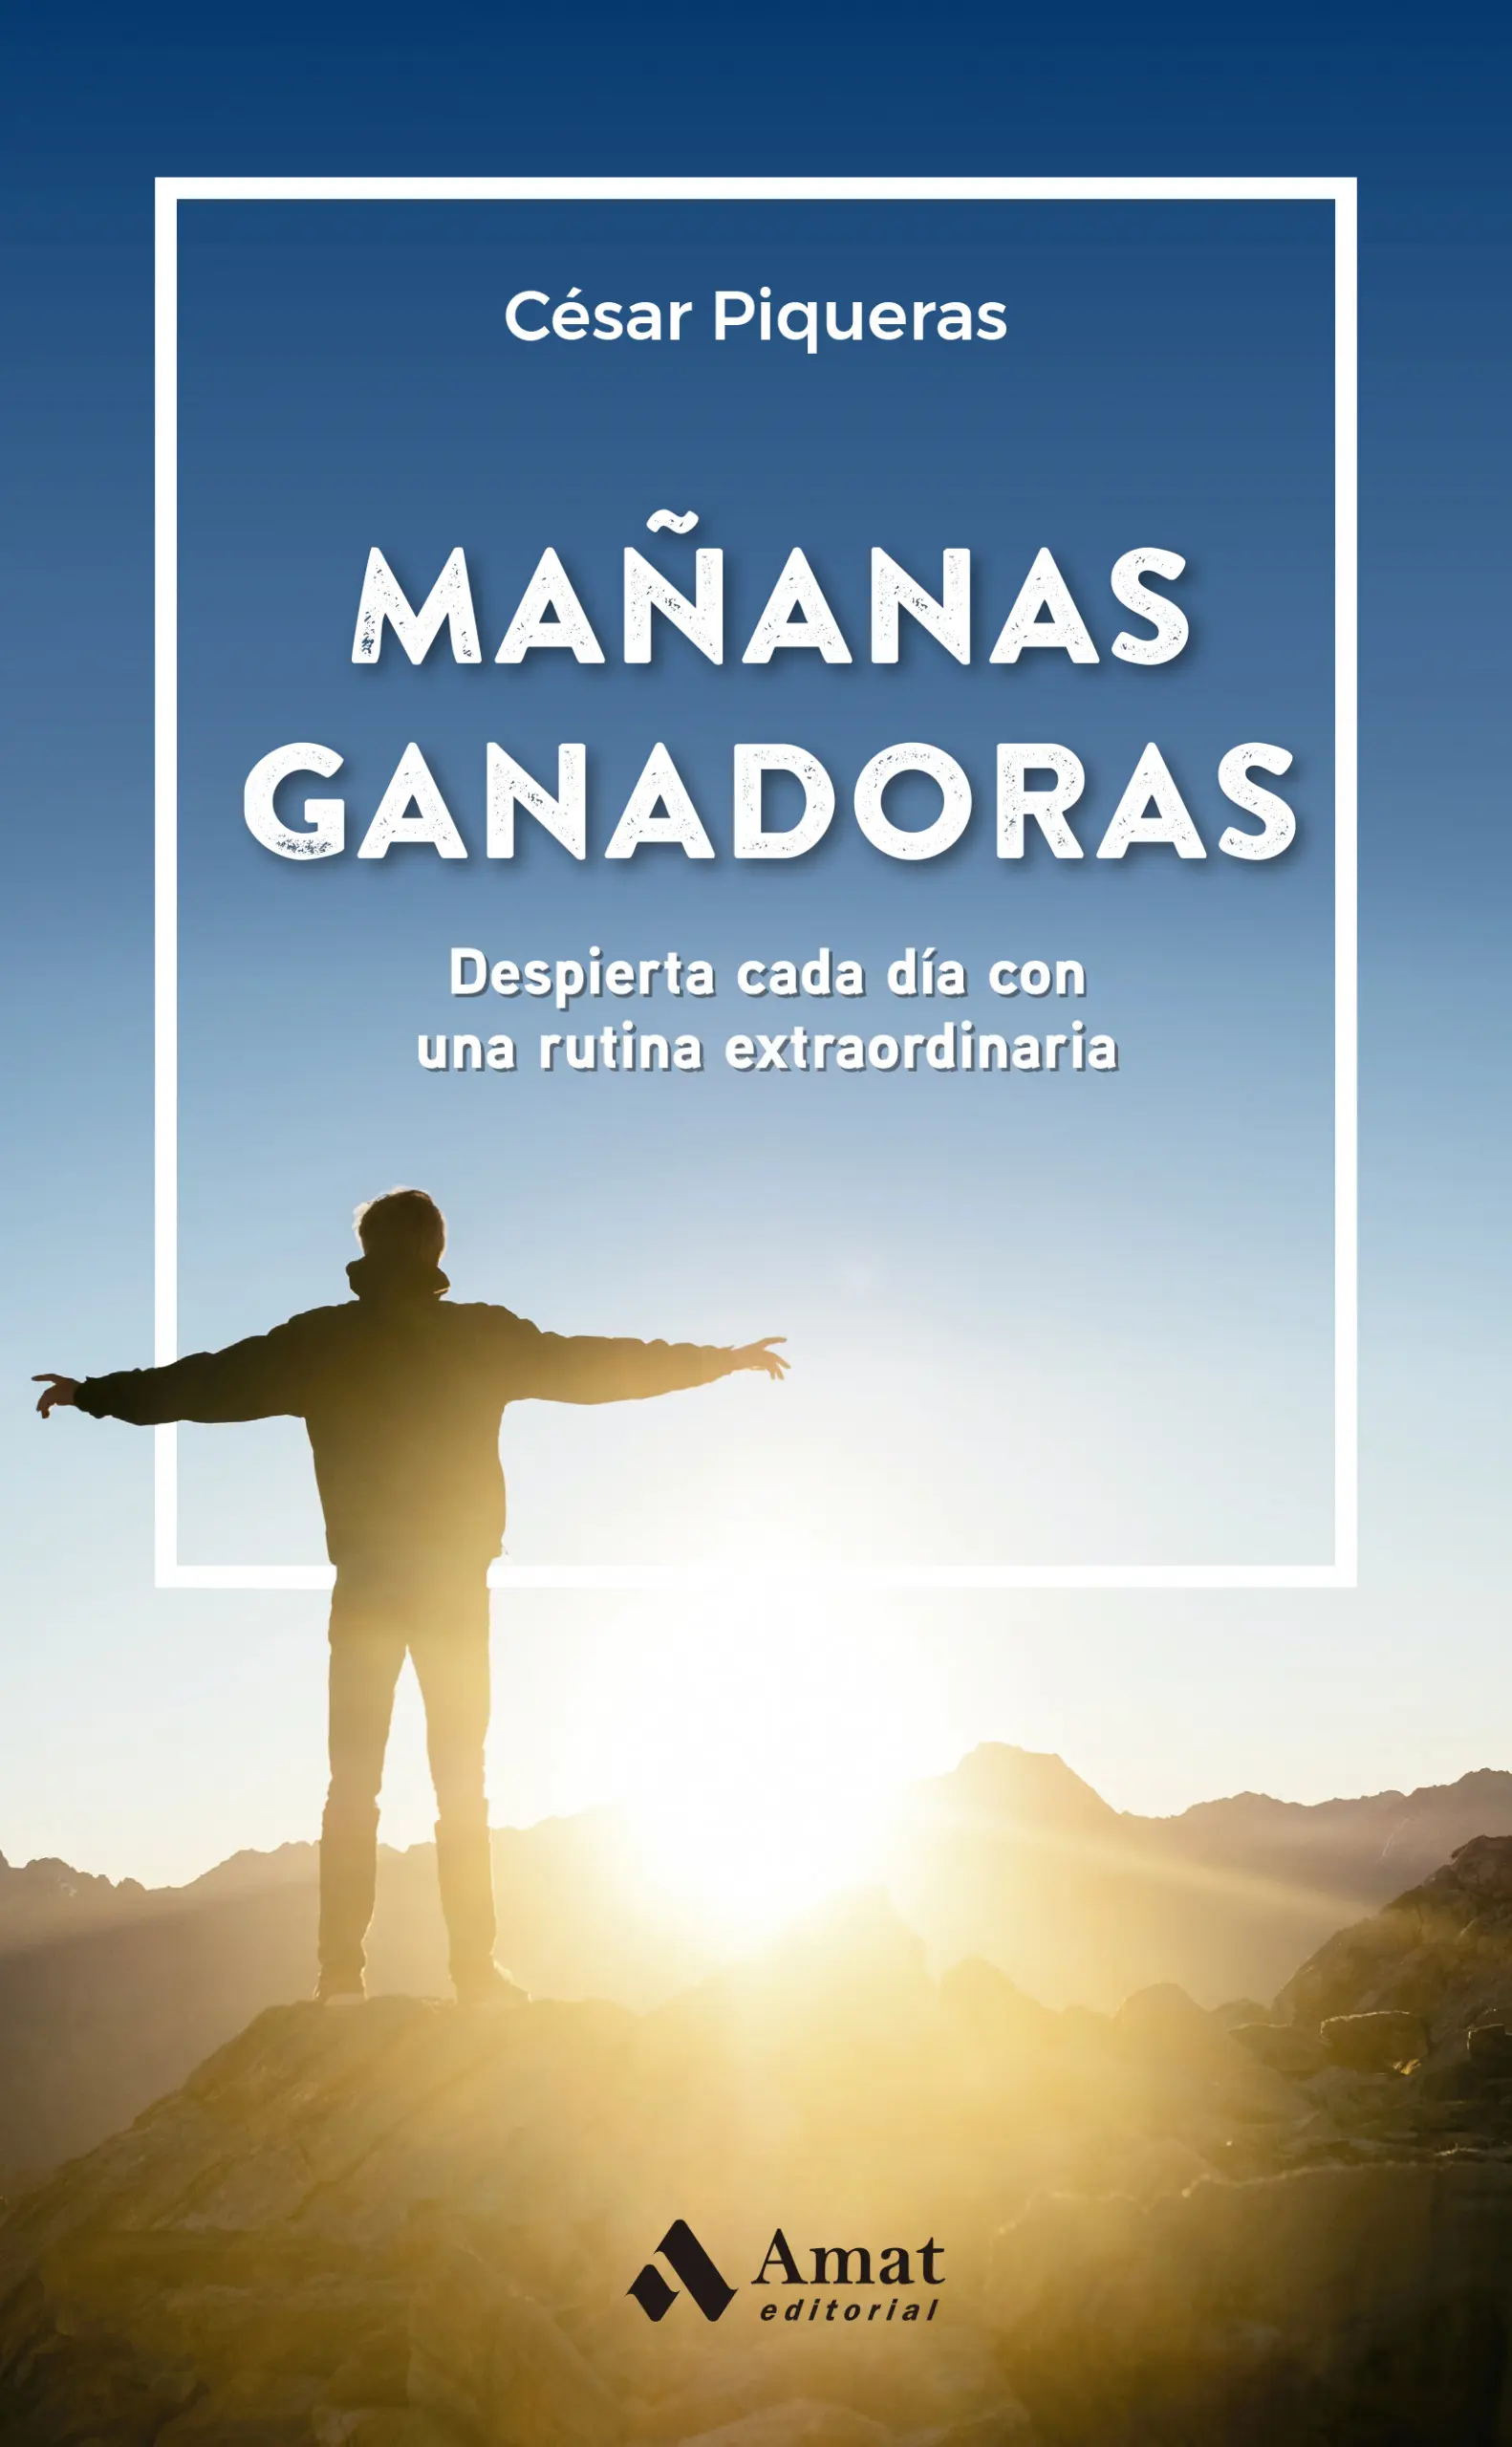 Mañanas ganadoras | César Piqueras | Libros para vivir mejor